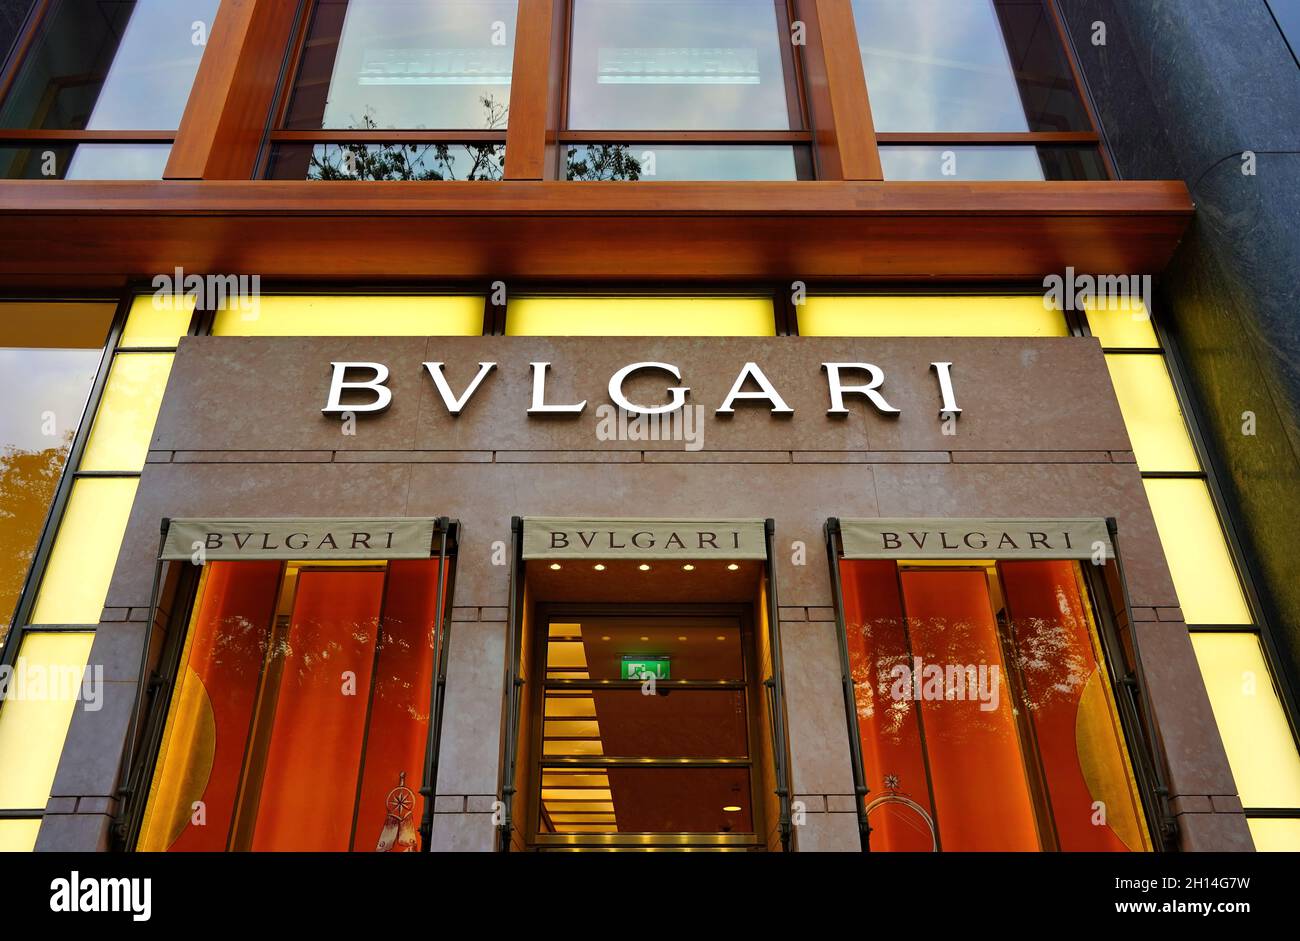 Bulgari-Ladenfront an der Königsallee in Düsseldorf. Bulgari ist ein italienisches Unternehmen, das für Luxusschmuck, Uhren, Parfüm und Lederwaren bekannt ist. Stockfoto